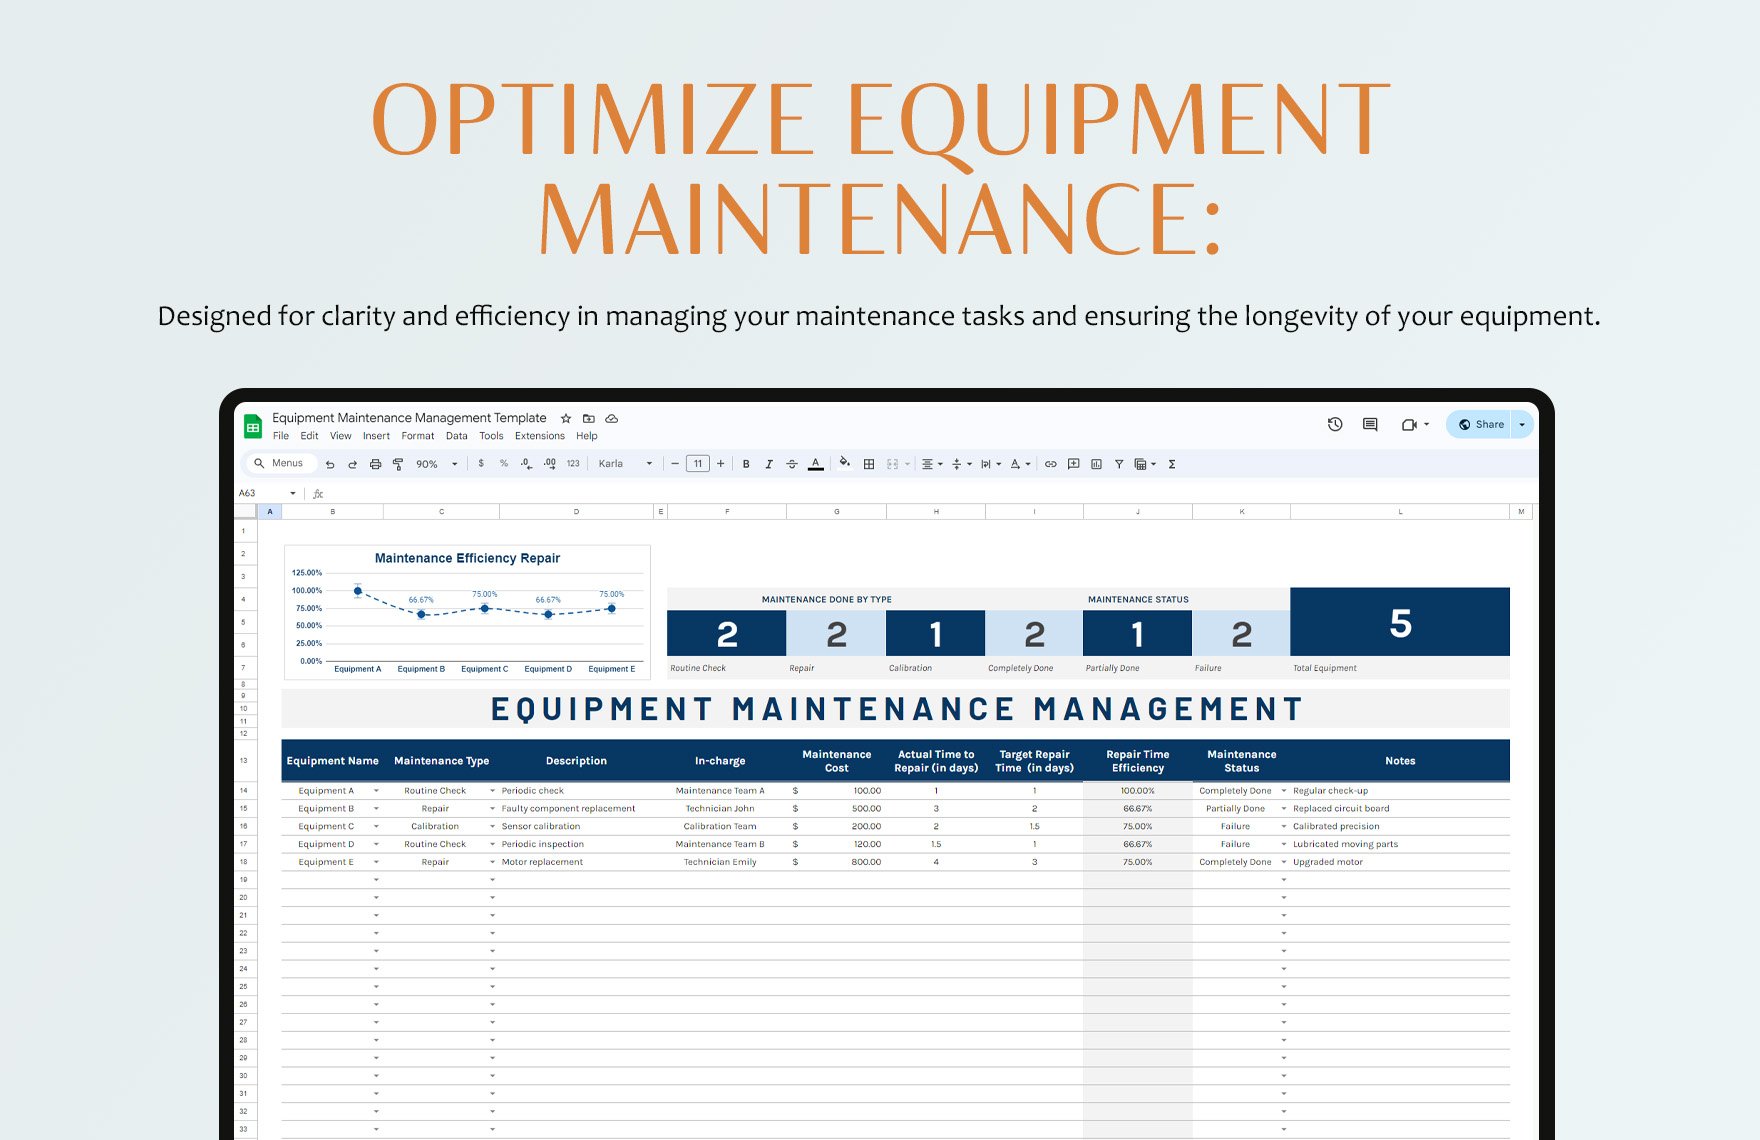 Equipment Maintenance Management Template